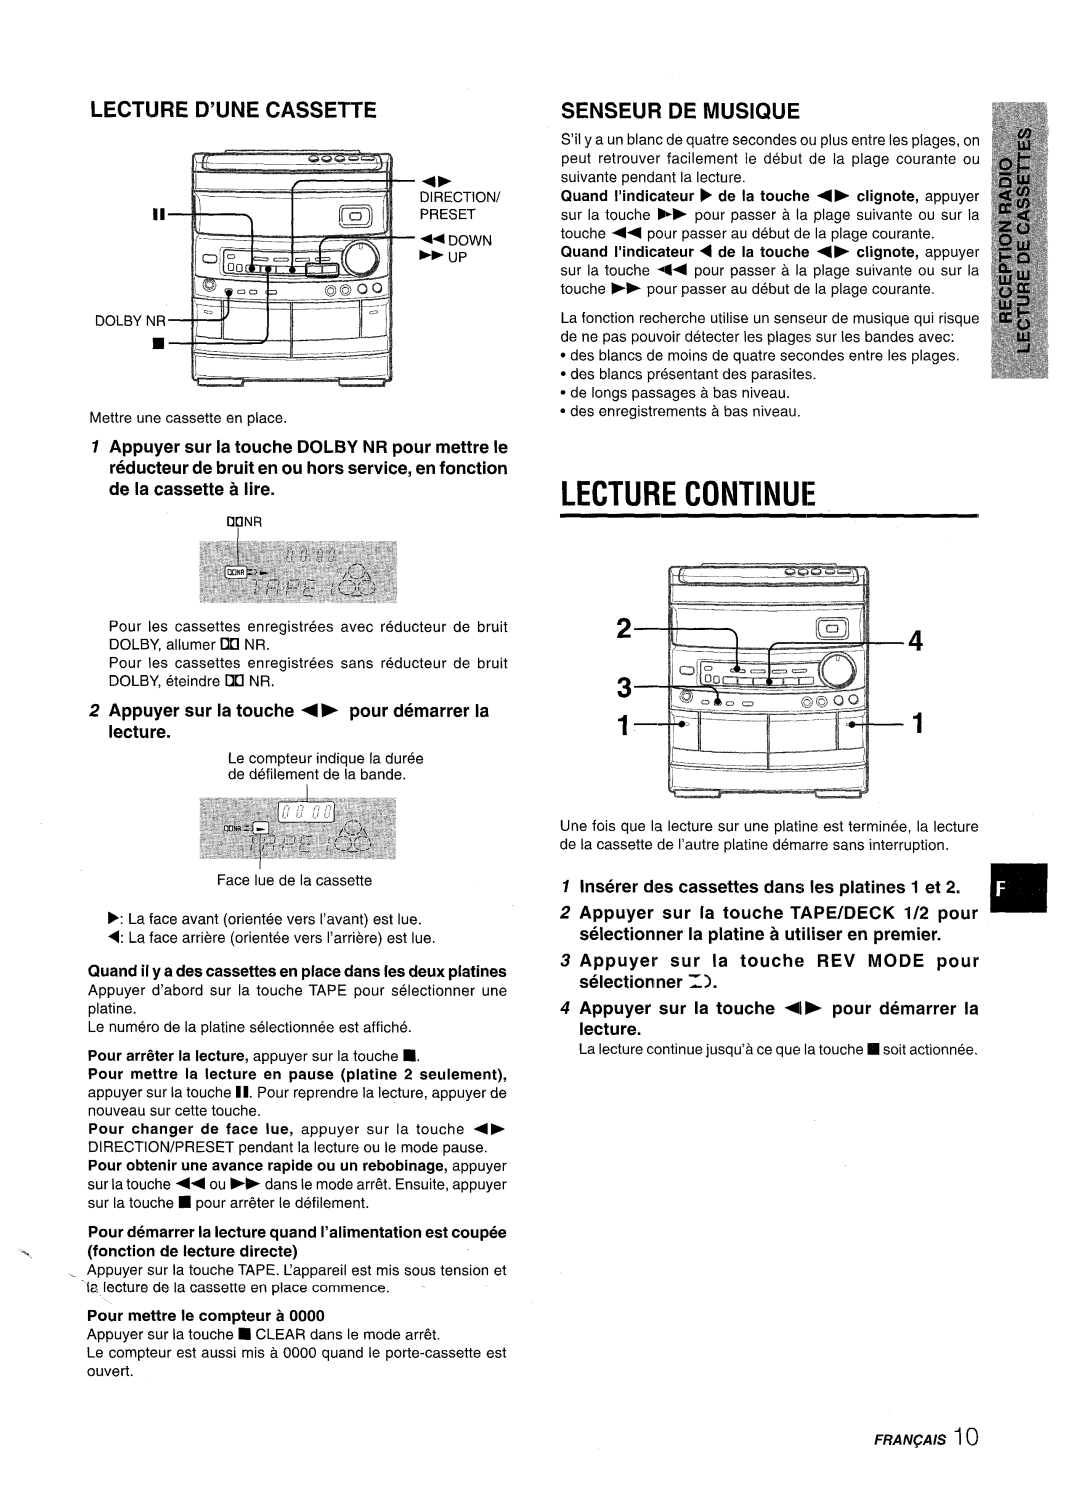 Aiwa NSX-AV800 manual Lecture Continue, Lecture D’Une Cassette, Senseur De Musique, T--’~”---‘- ~---j-j T 